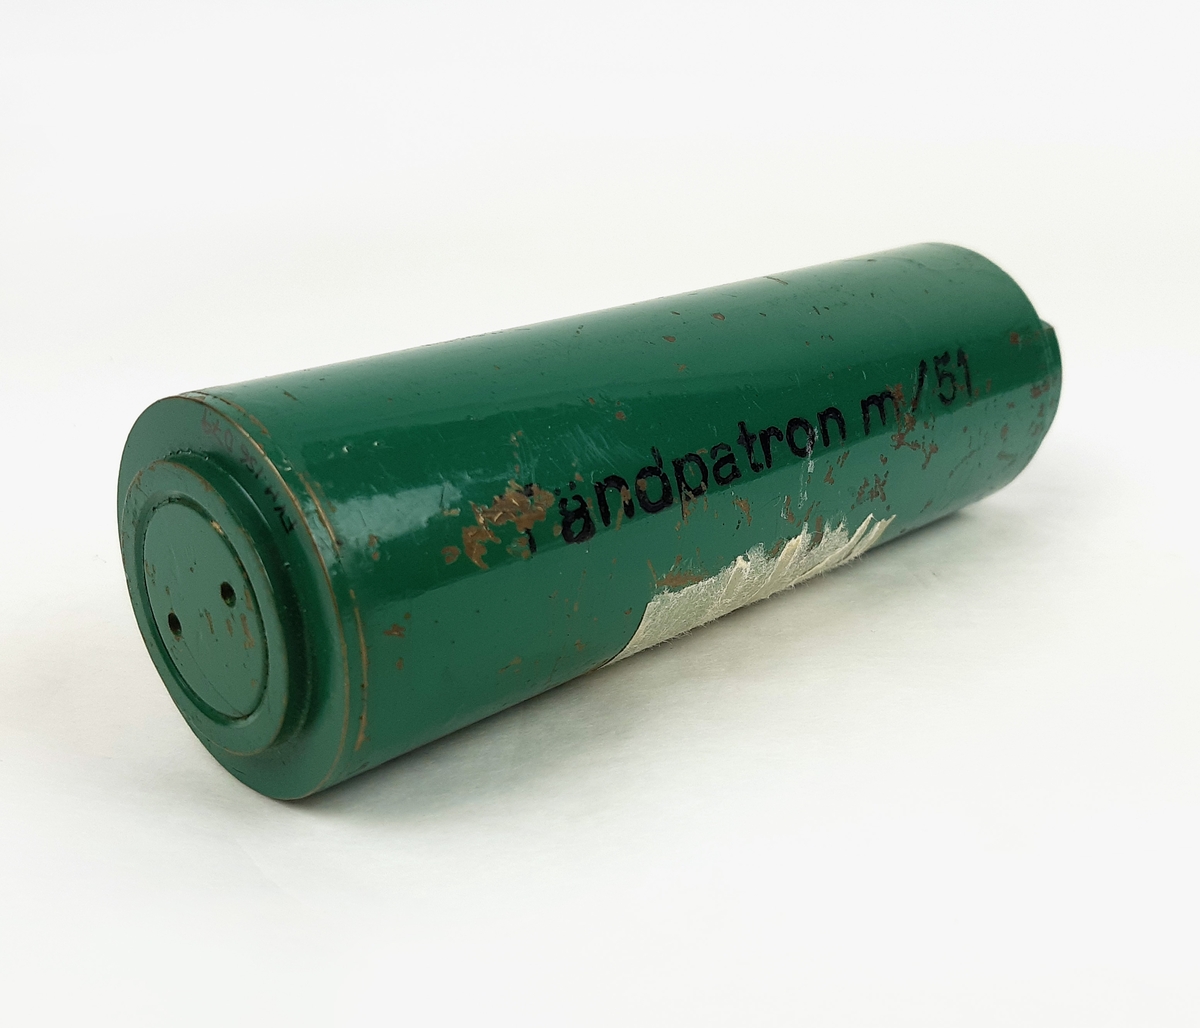 Tändpatron m/51, bestående av en cylinderformad kapsell i grönmålad metall. Vid sidan märkt "Tändpatron m/51". Samt märkt "BLIND" på kortsidorna.